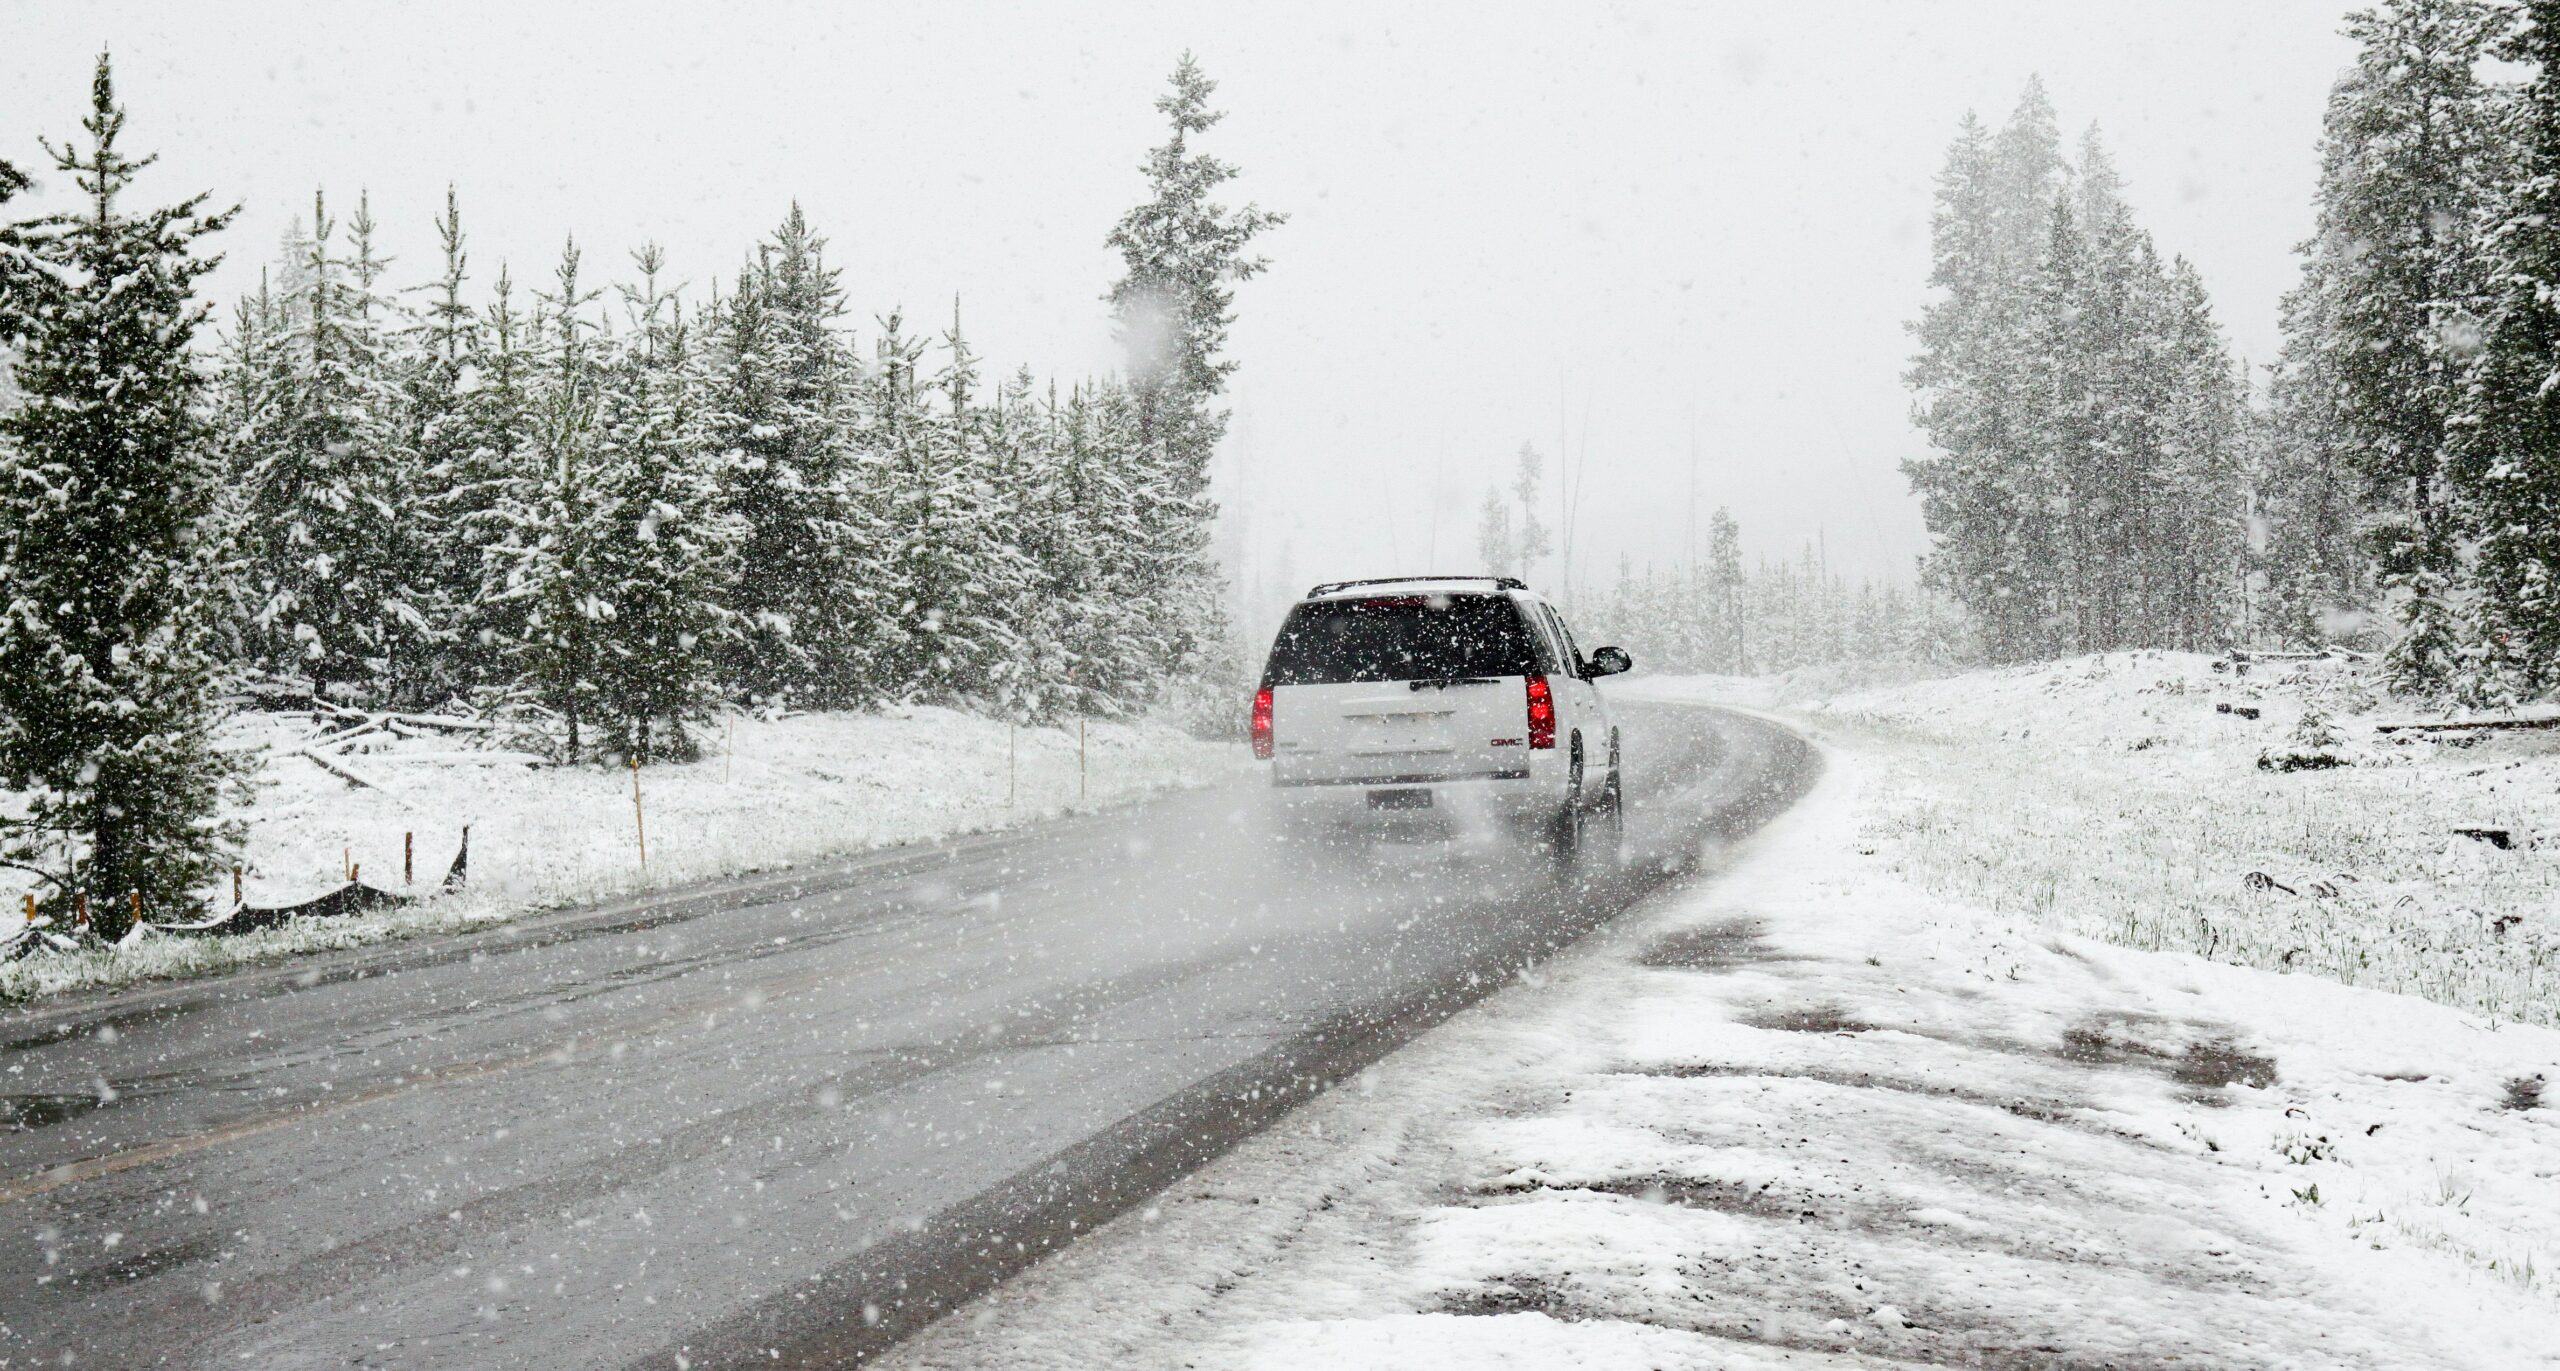 Jūsų transporto priemonės paruošimas-vairavimas žiemą